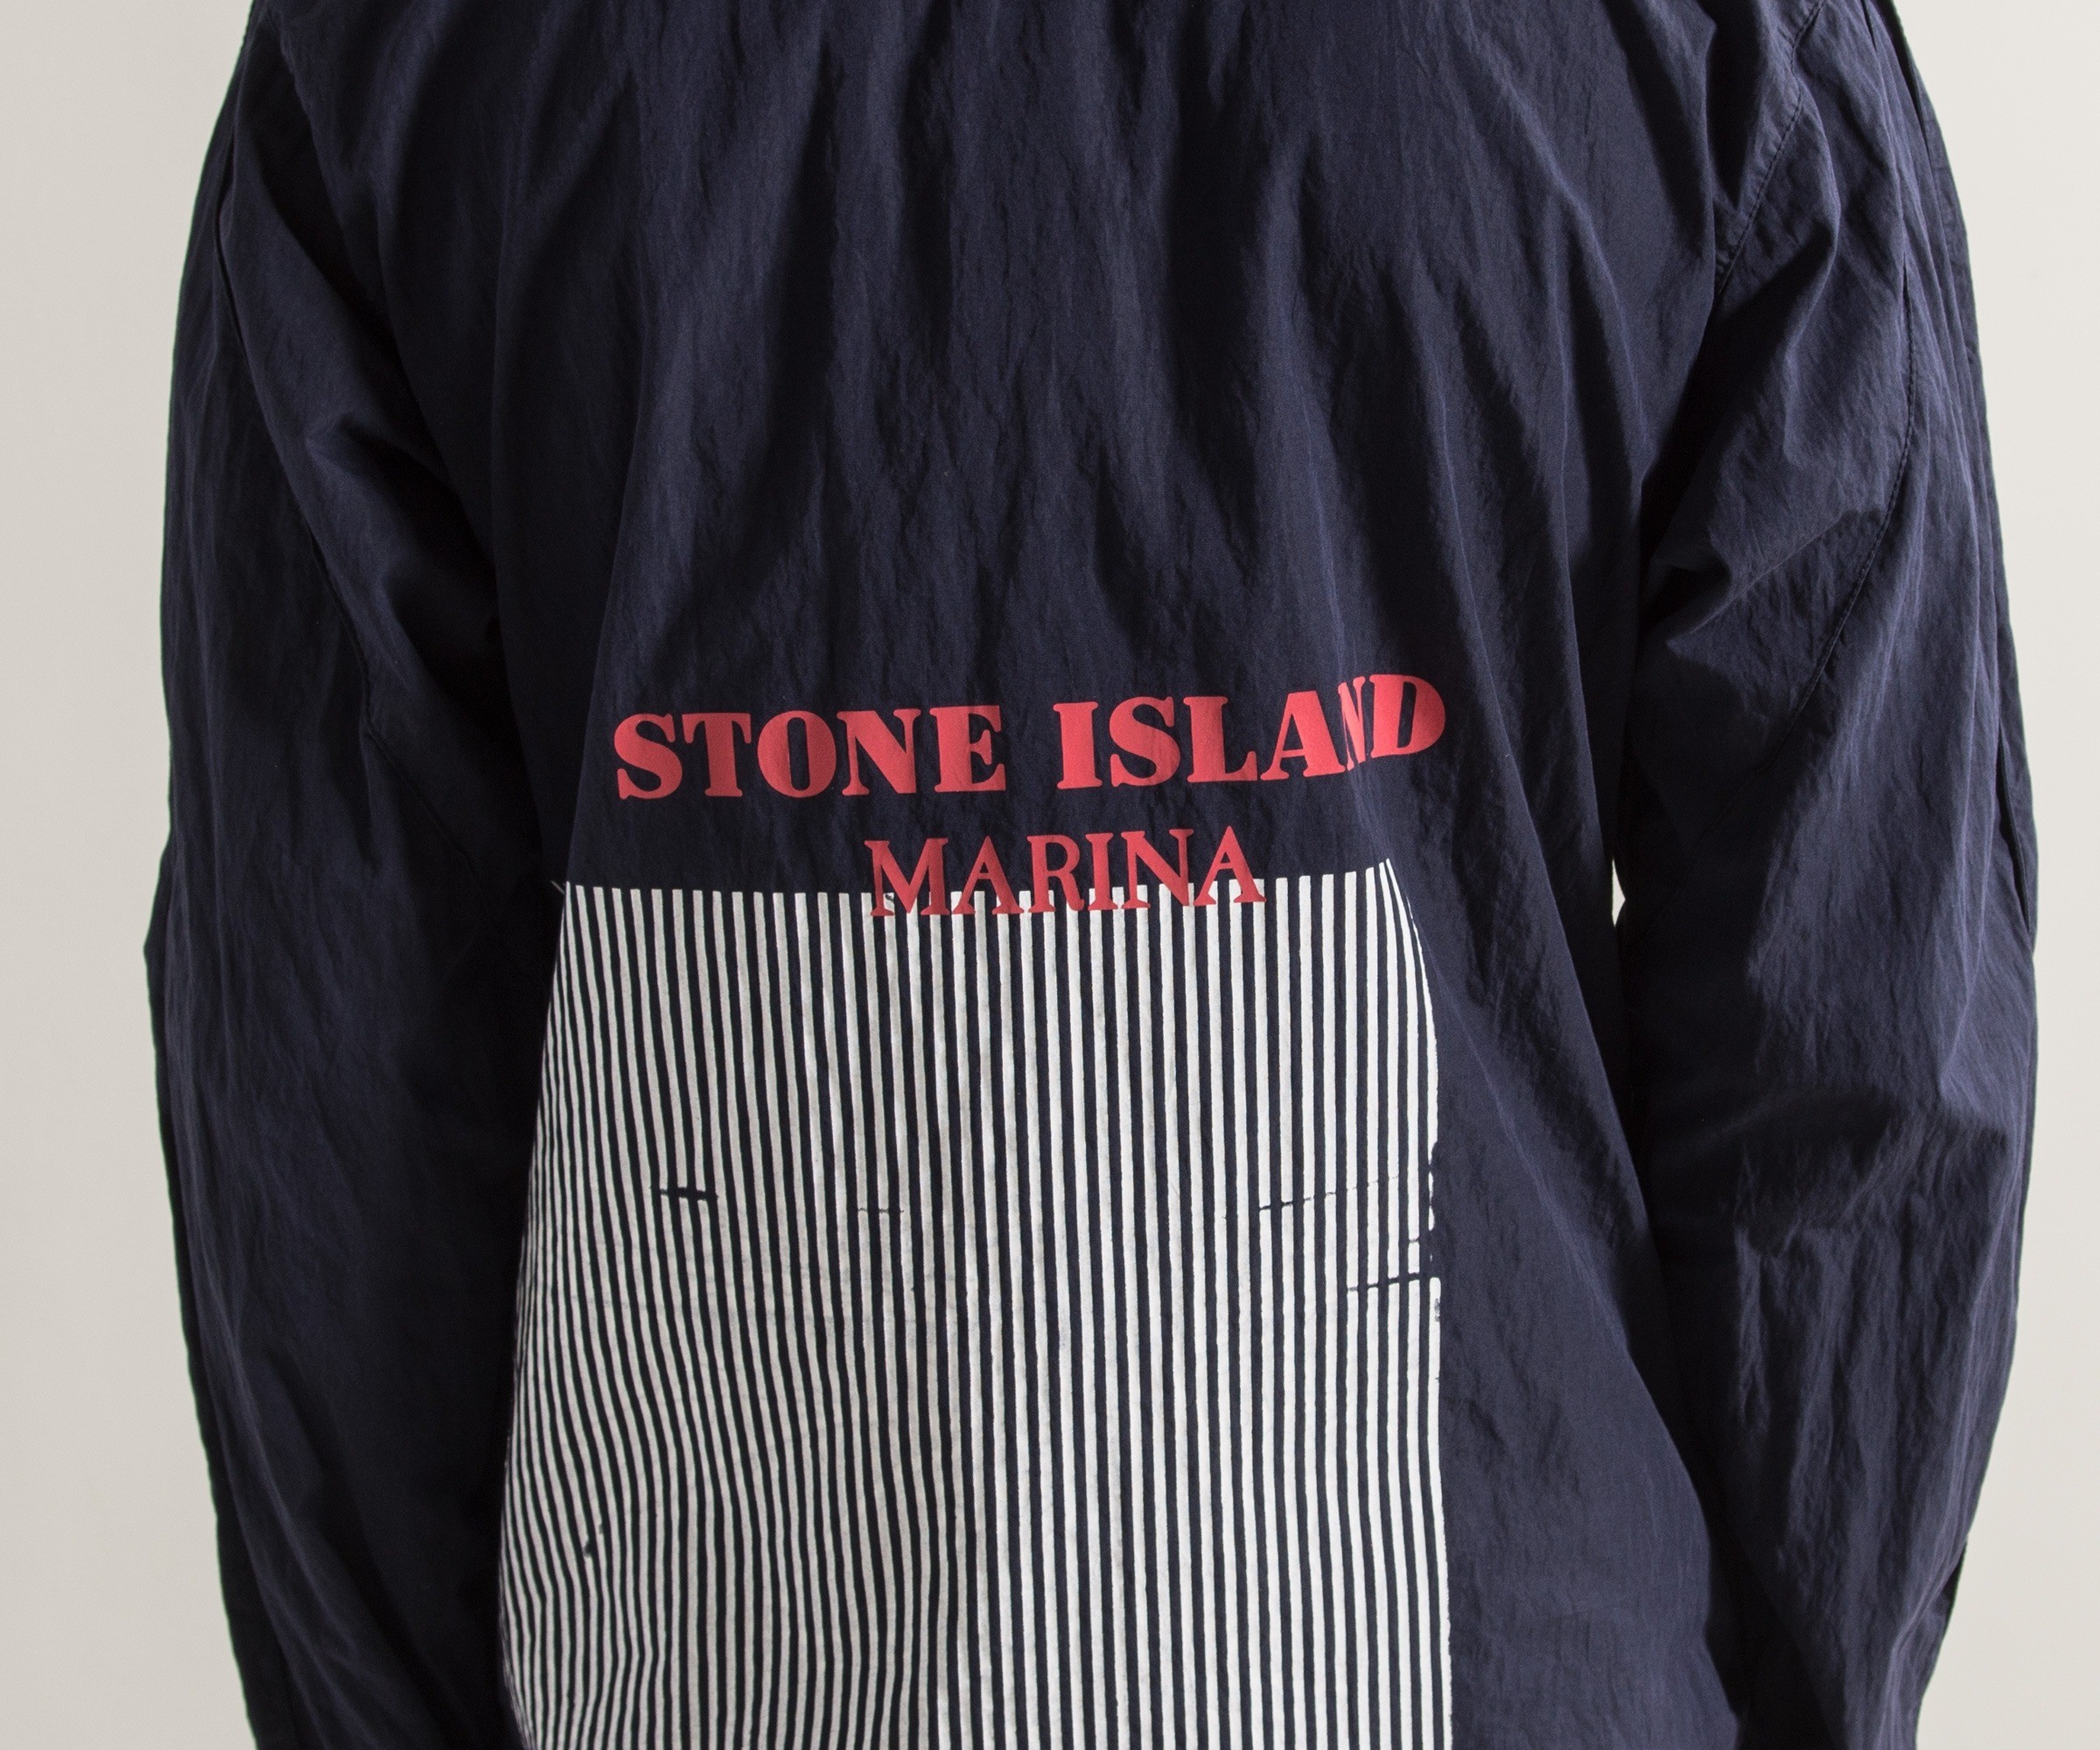 Stone Island Marina '50 Fili' Folded Marina Print Overshirt Navy